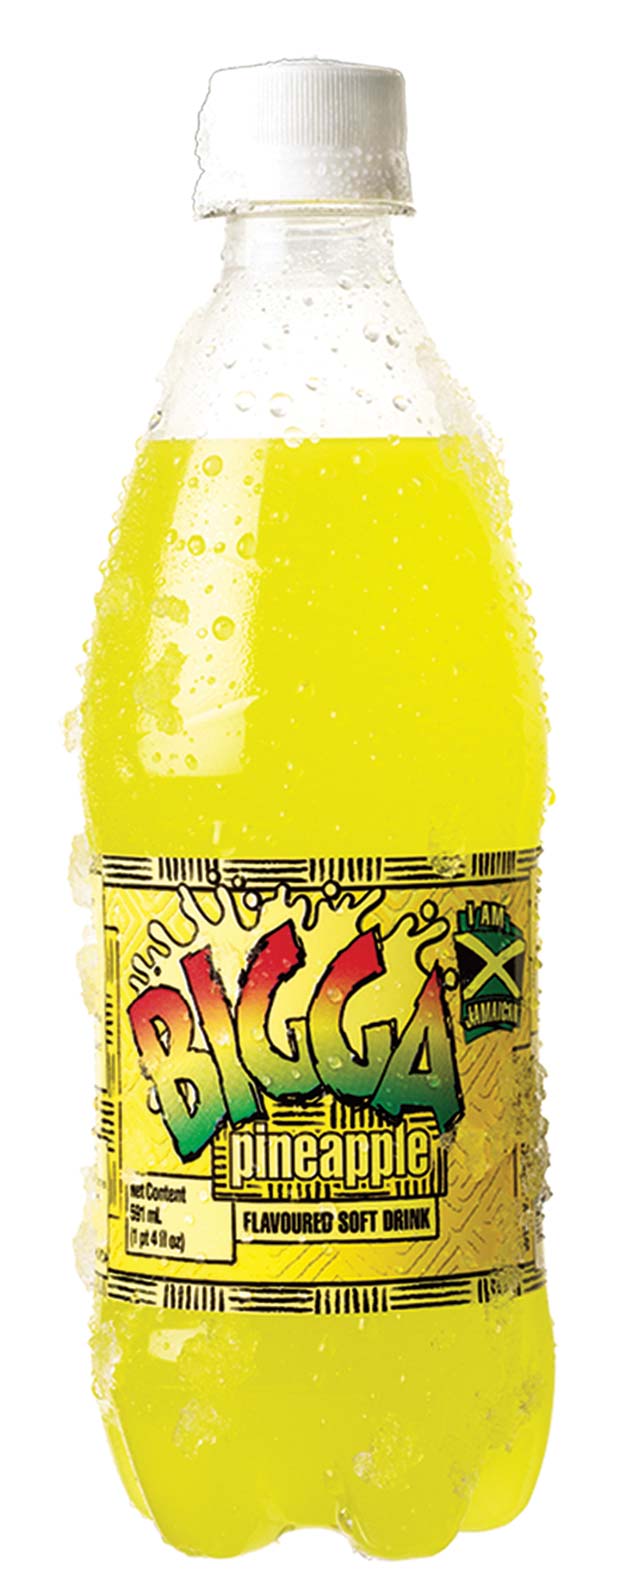 Bigga-Product-shot-Pineapple[5]